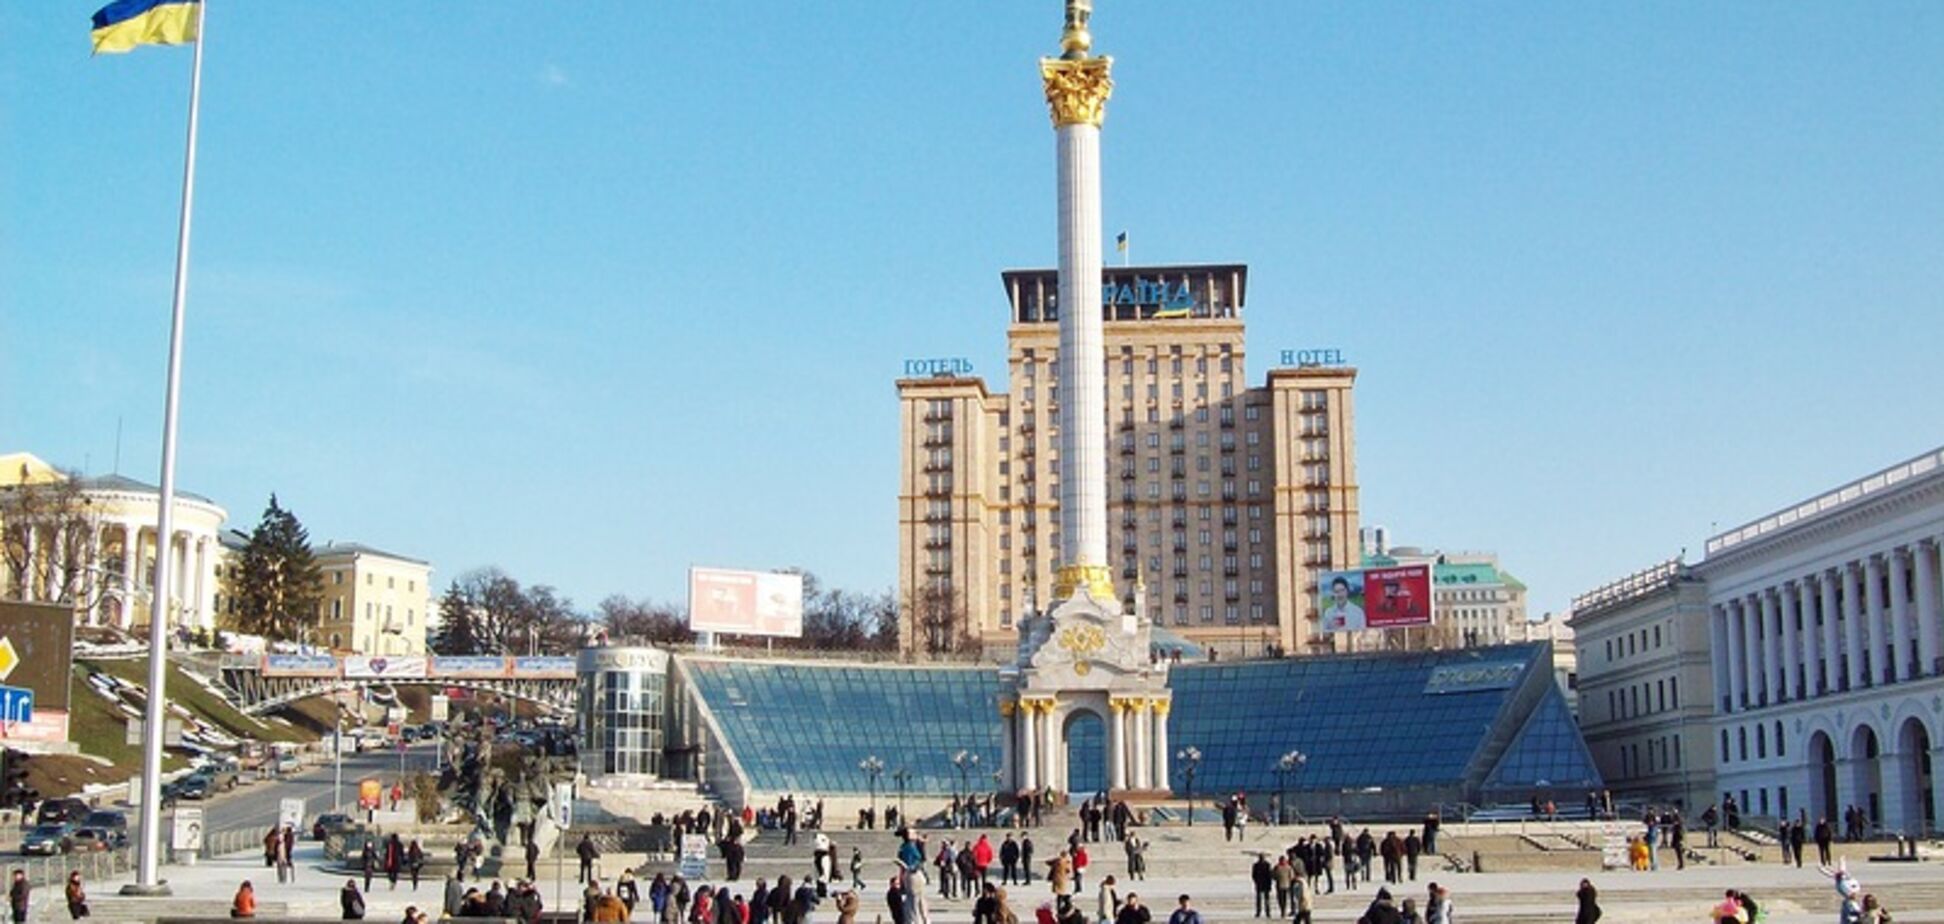 'Людям есть нечего!' РосСМИ придумали новый фейк об Украине